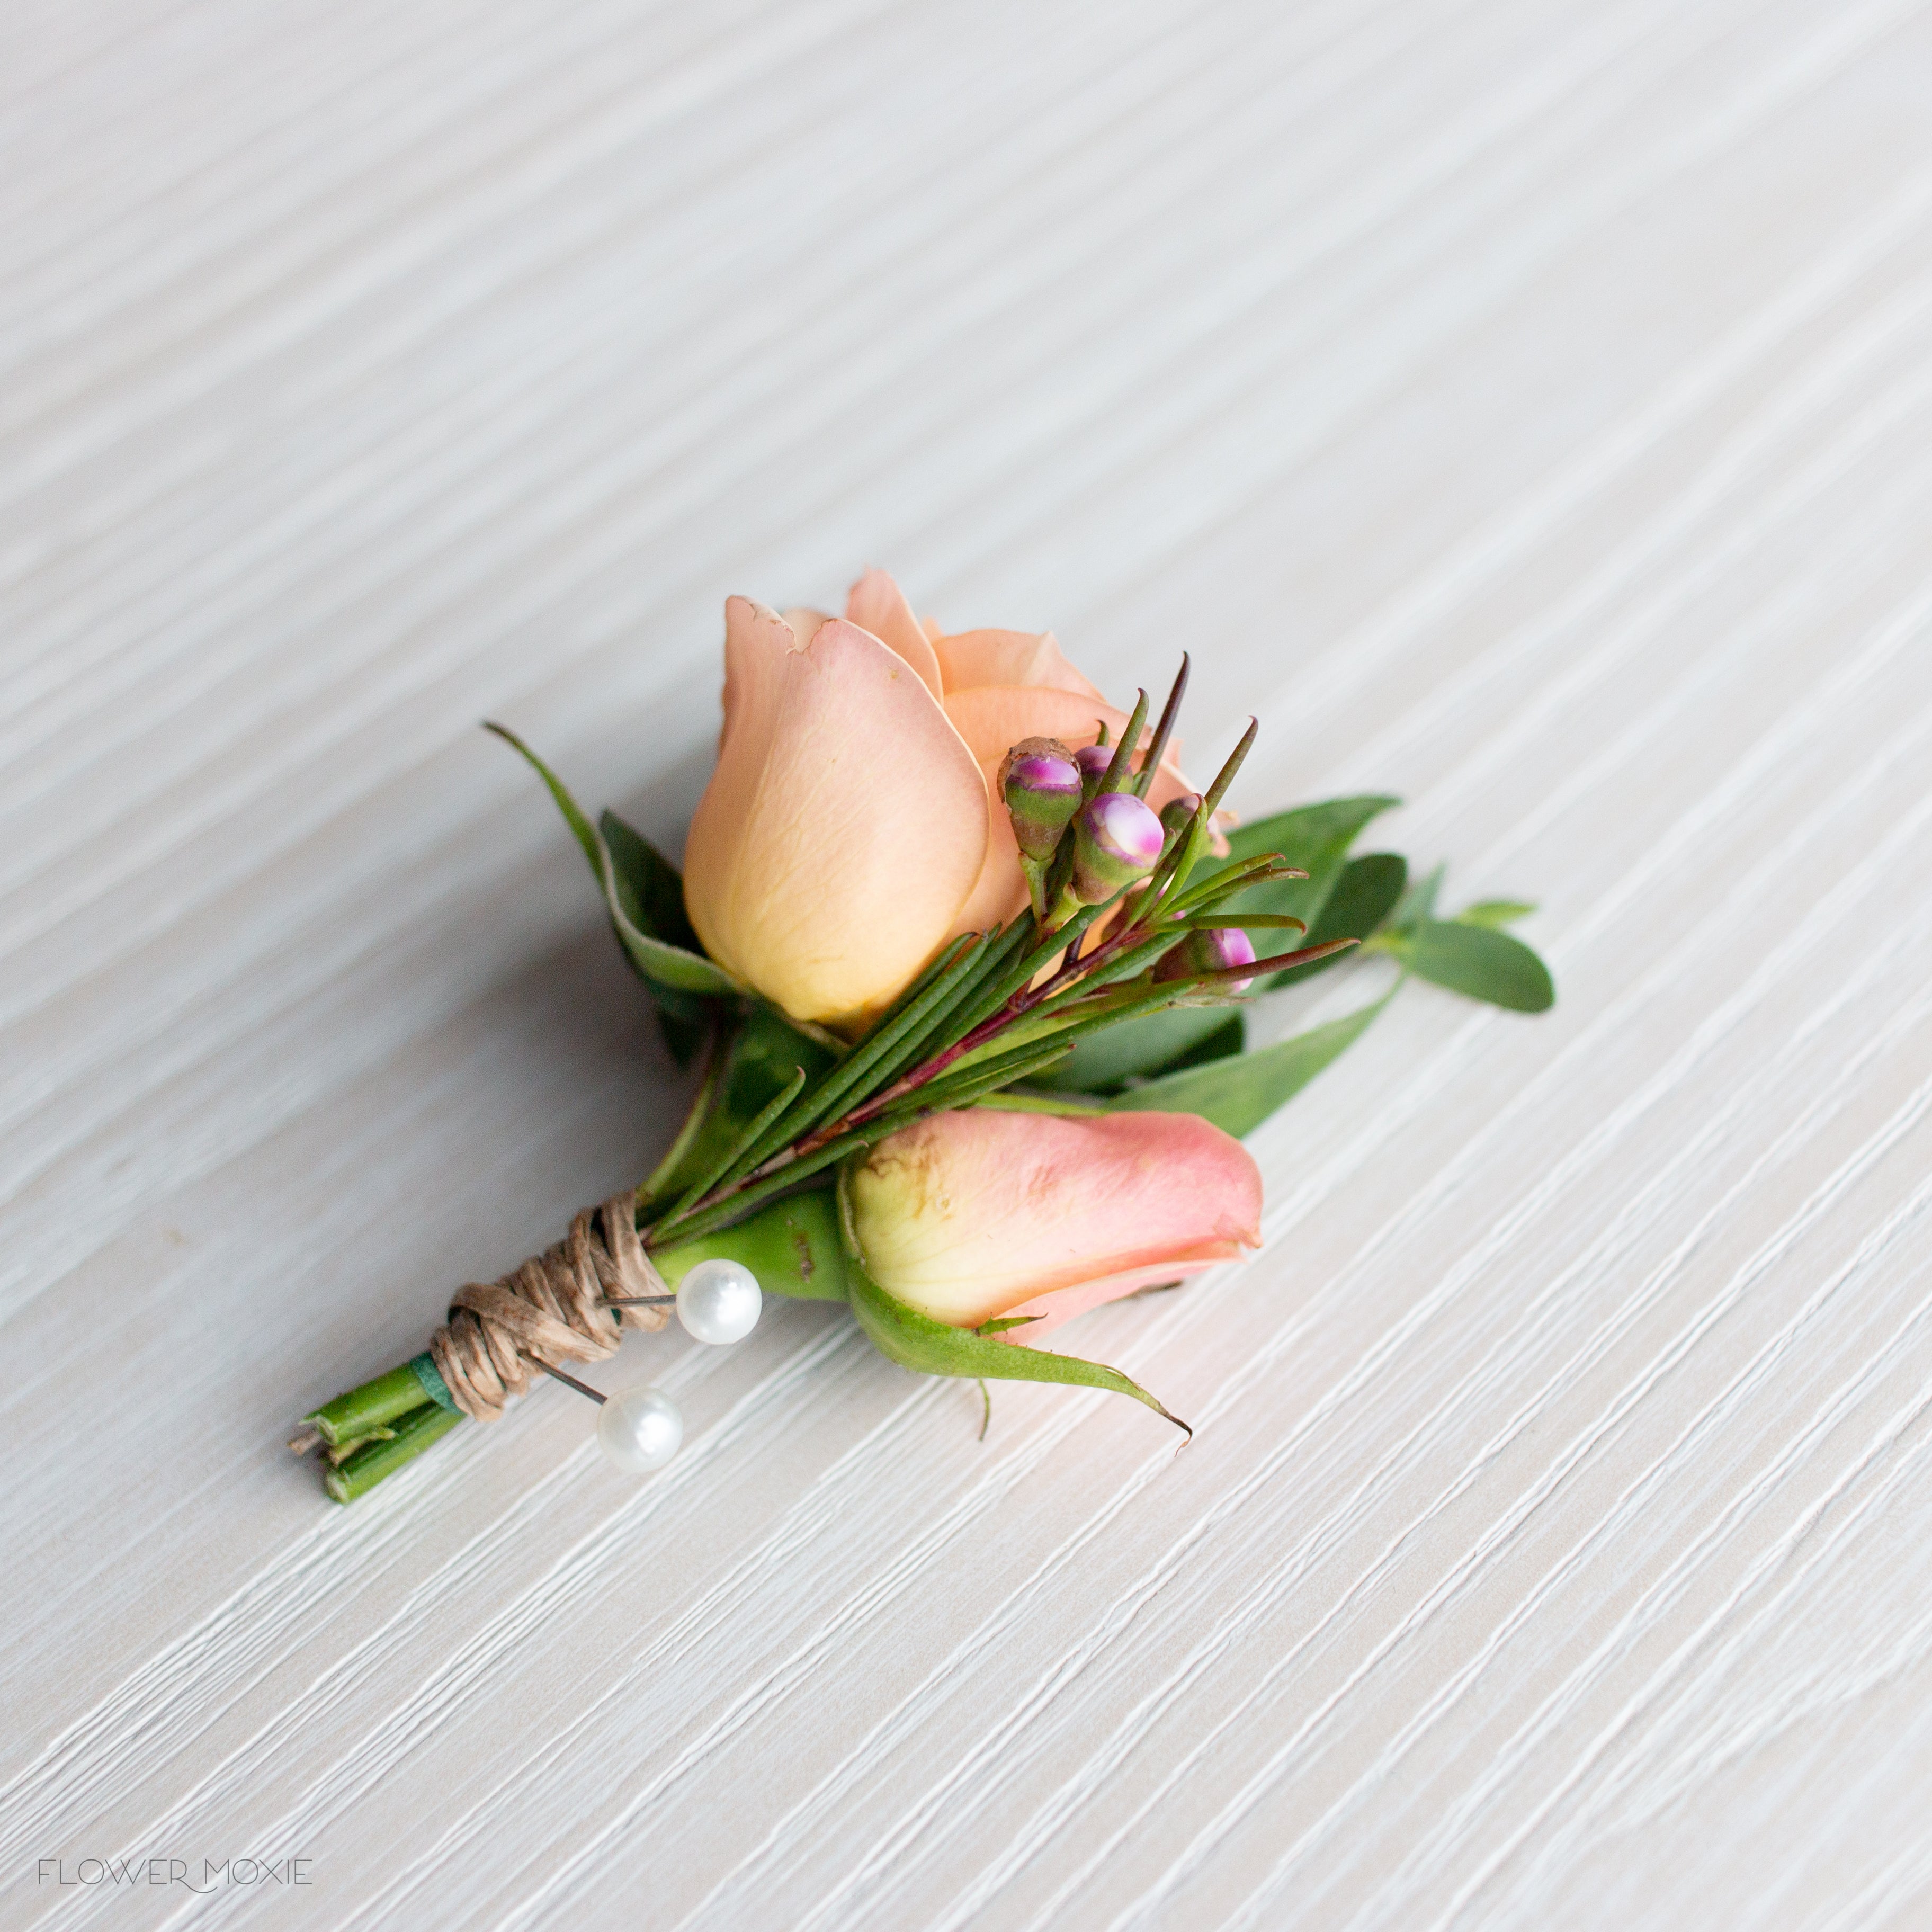 Floral Supplies | DIY Flower Supply | Flower Moxie – Flower Moxie 